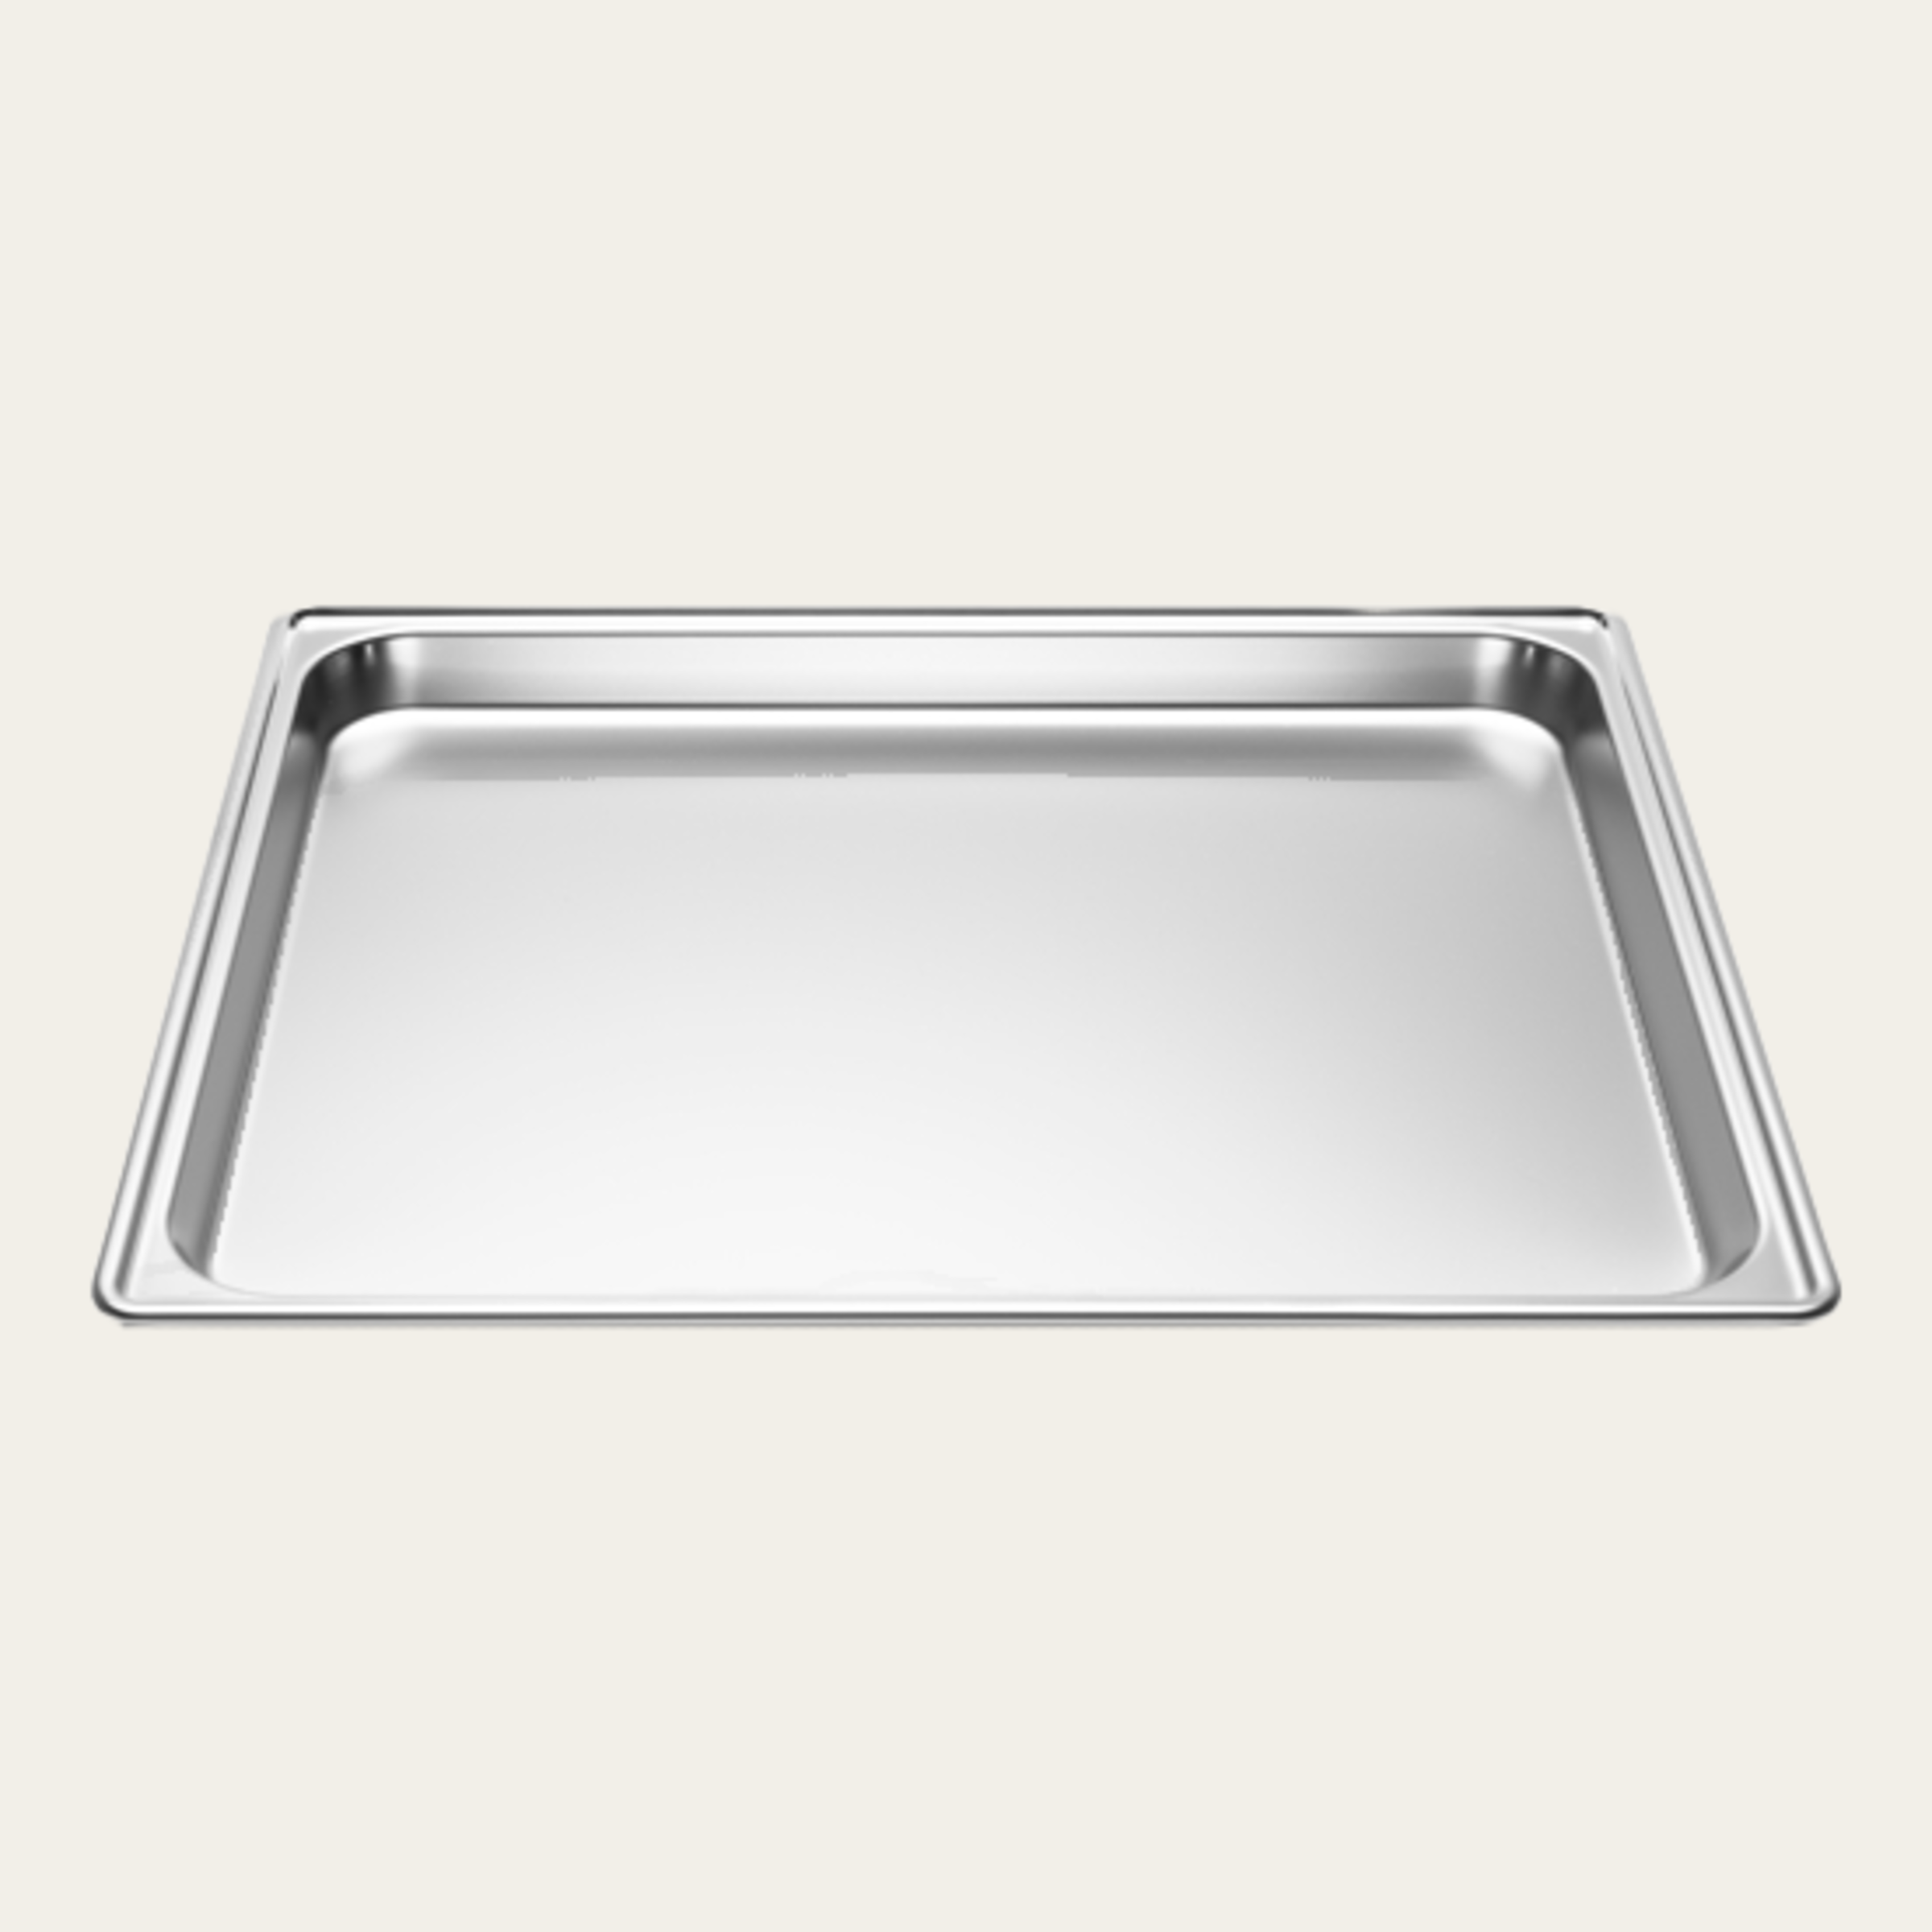 无孔不锈钢烤盘，长/宽/高 430 x 370 x 25 mm